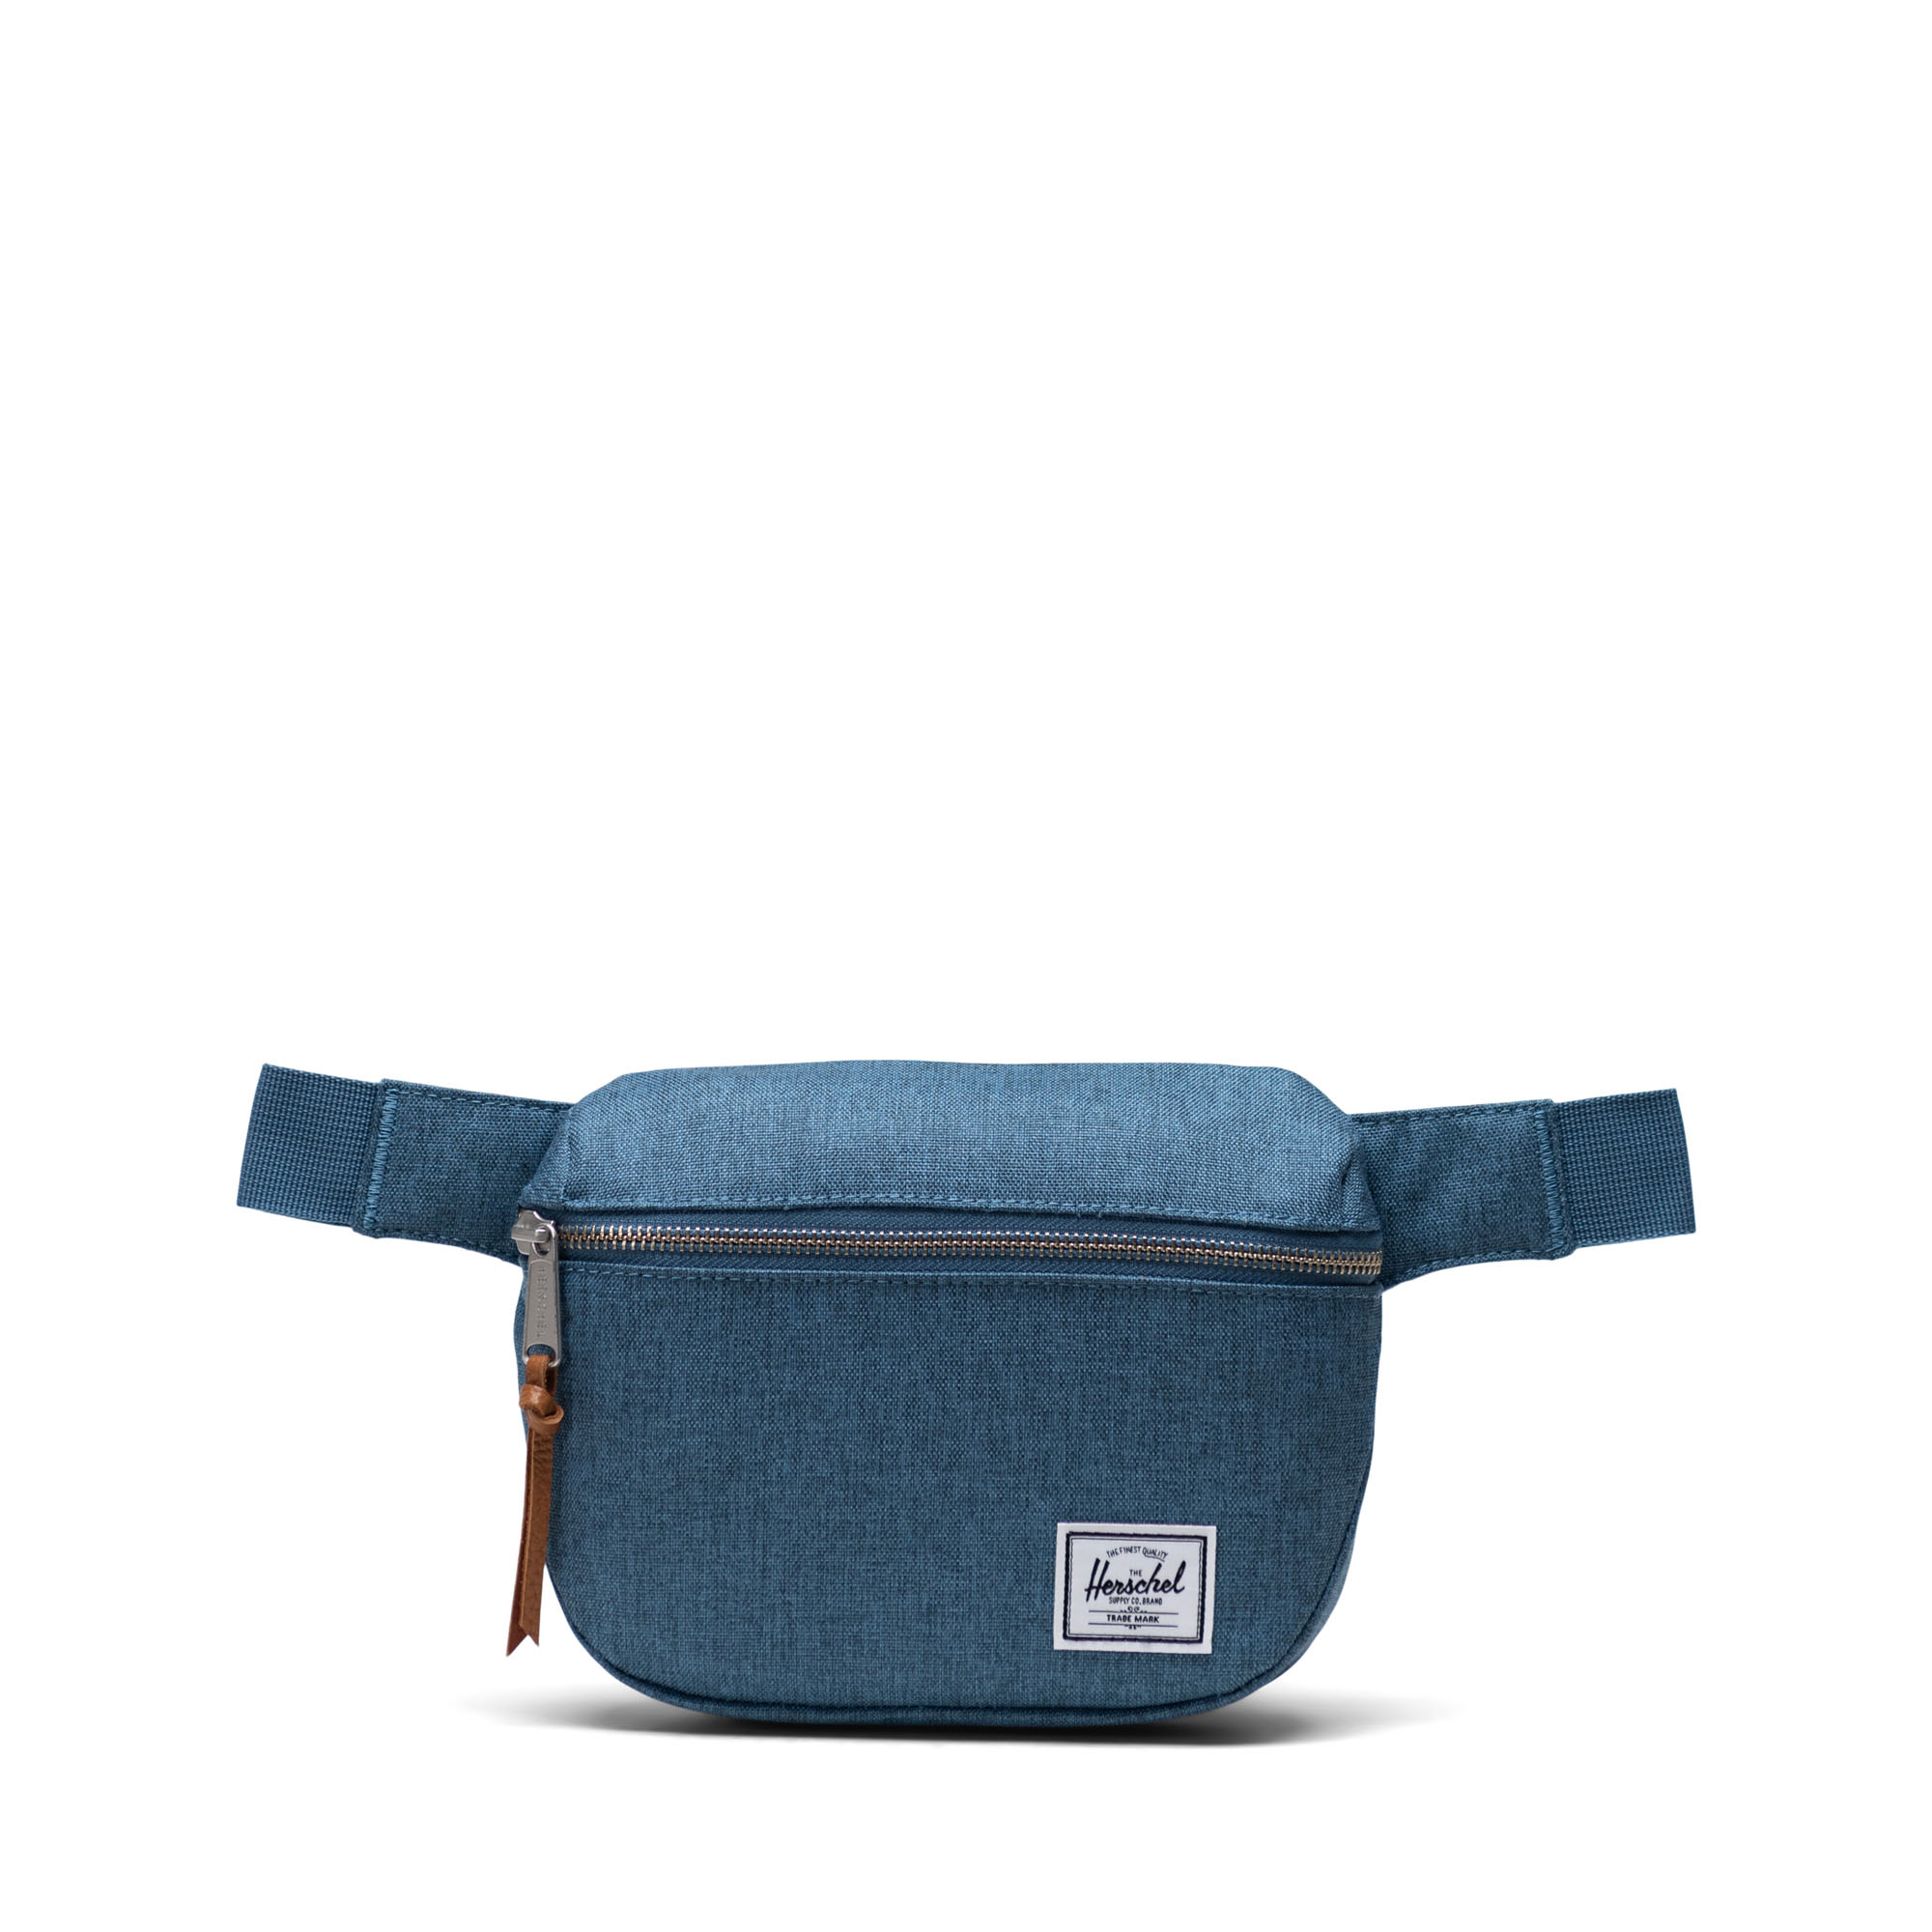 Fifteen Hip Pack Bag | Herschel Supply Co.